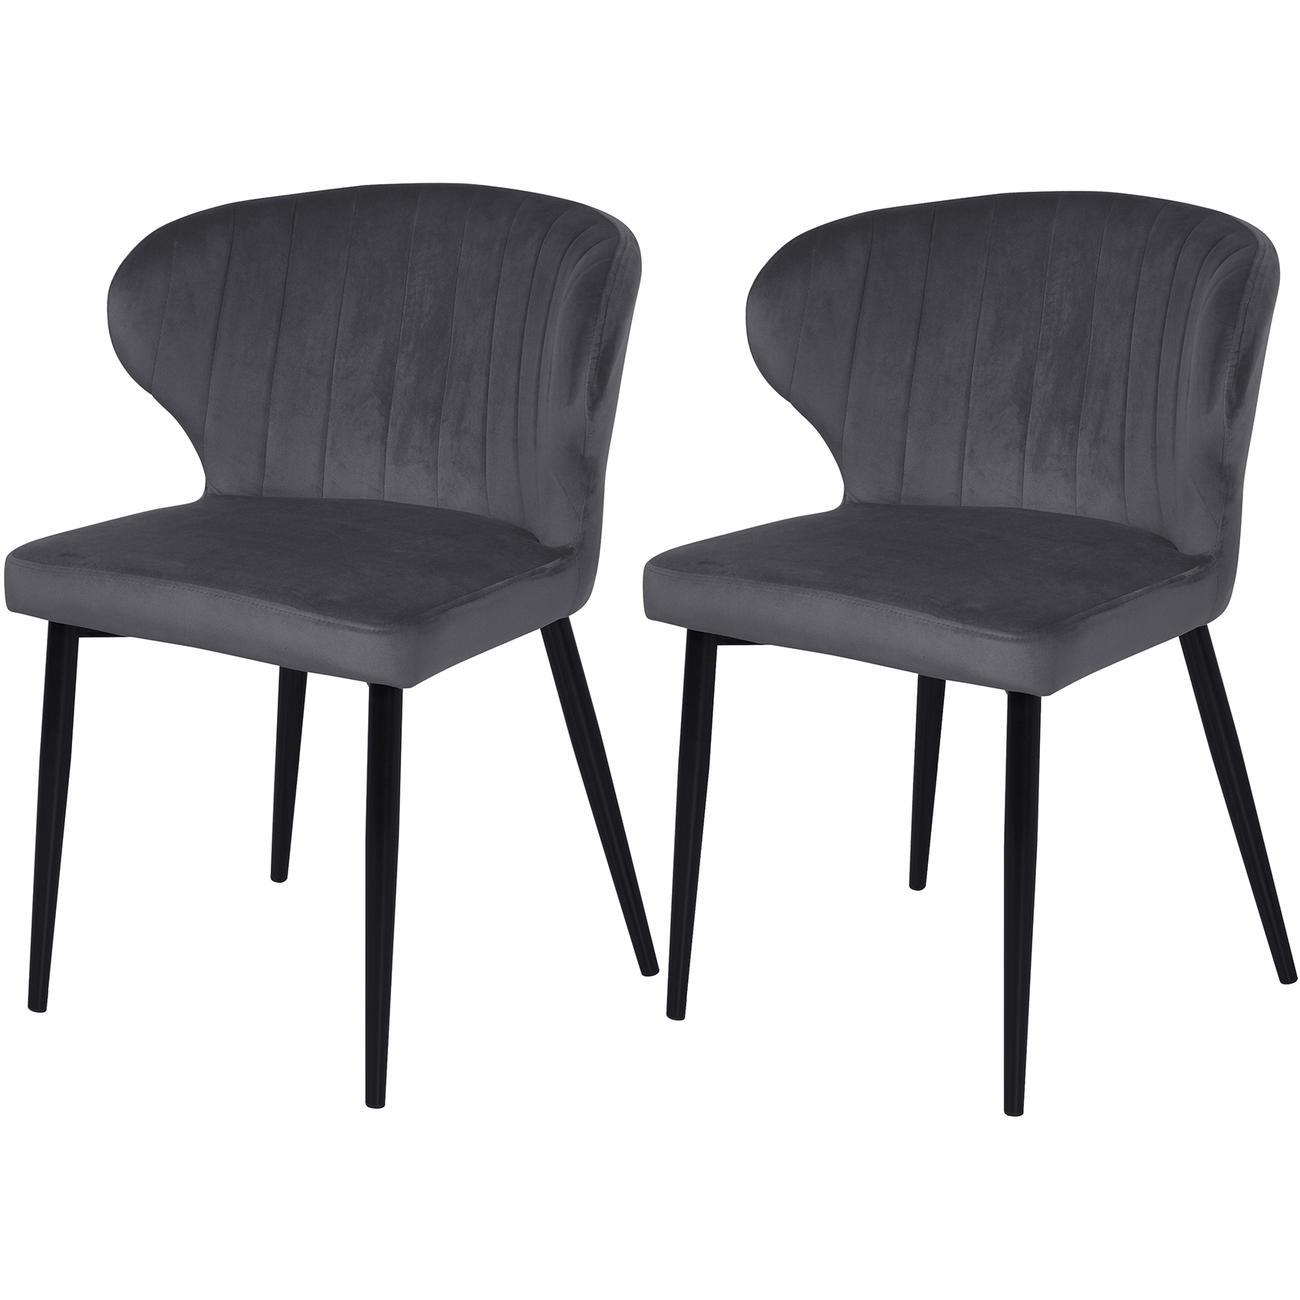 Chaise assise velours gris pieds métal noir - Lot de 2